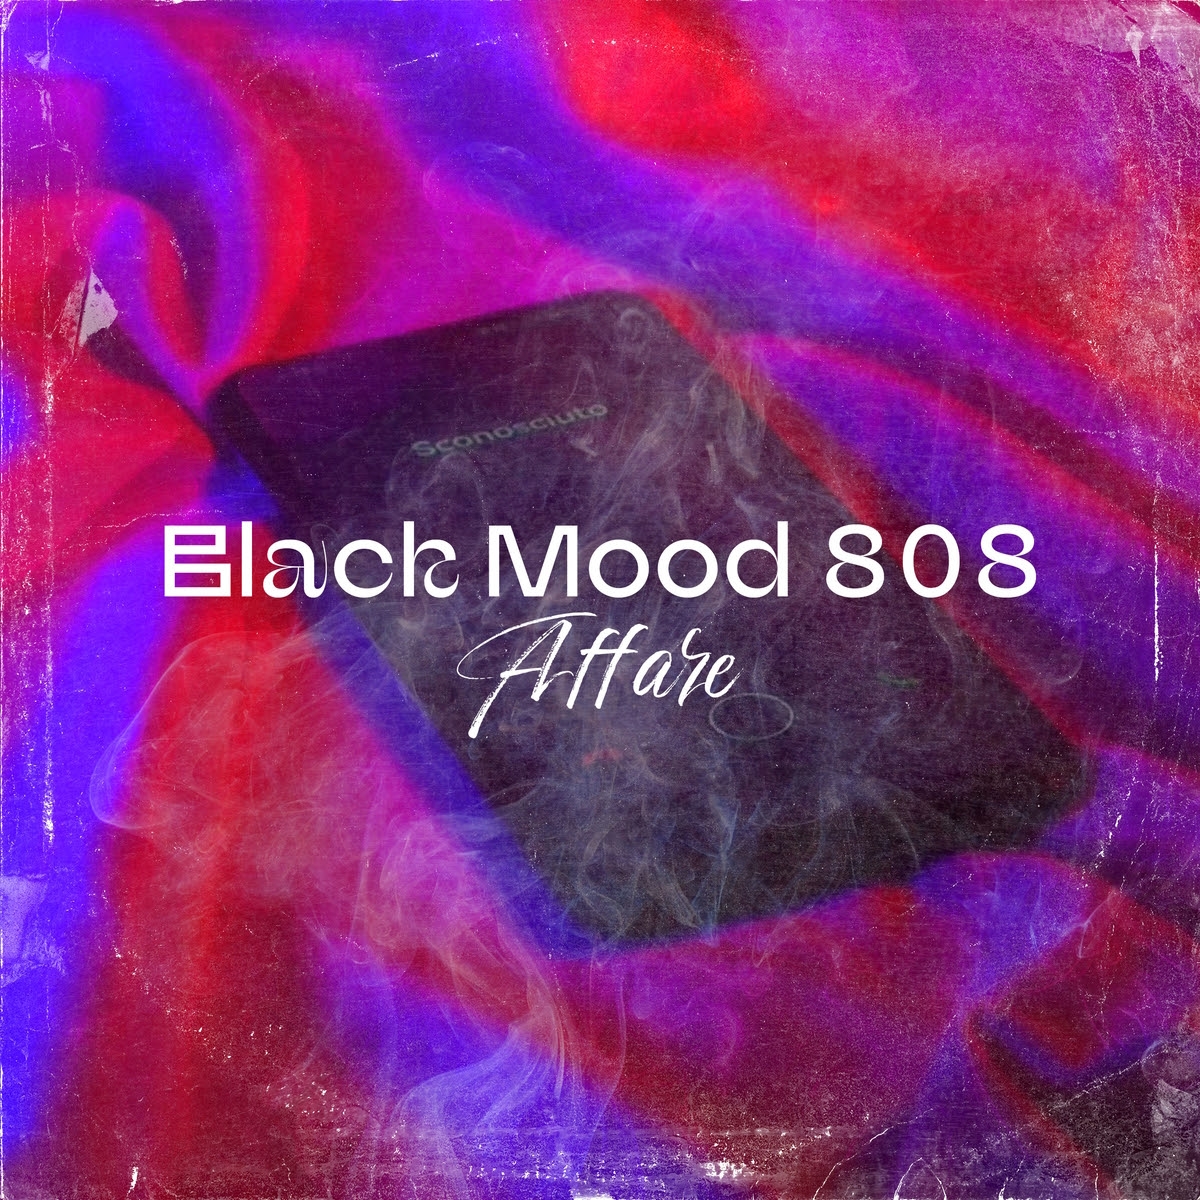 BLACK MOOD 808: venerdì 7 aprile esce in radio e in digitale “AFFARE” il nuovo singolo